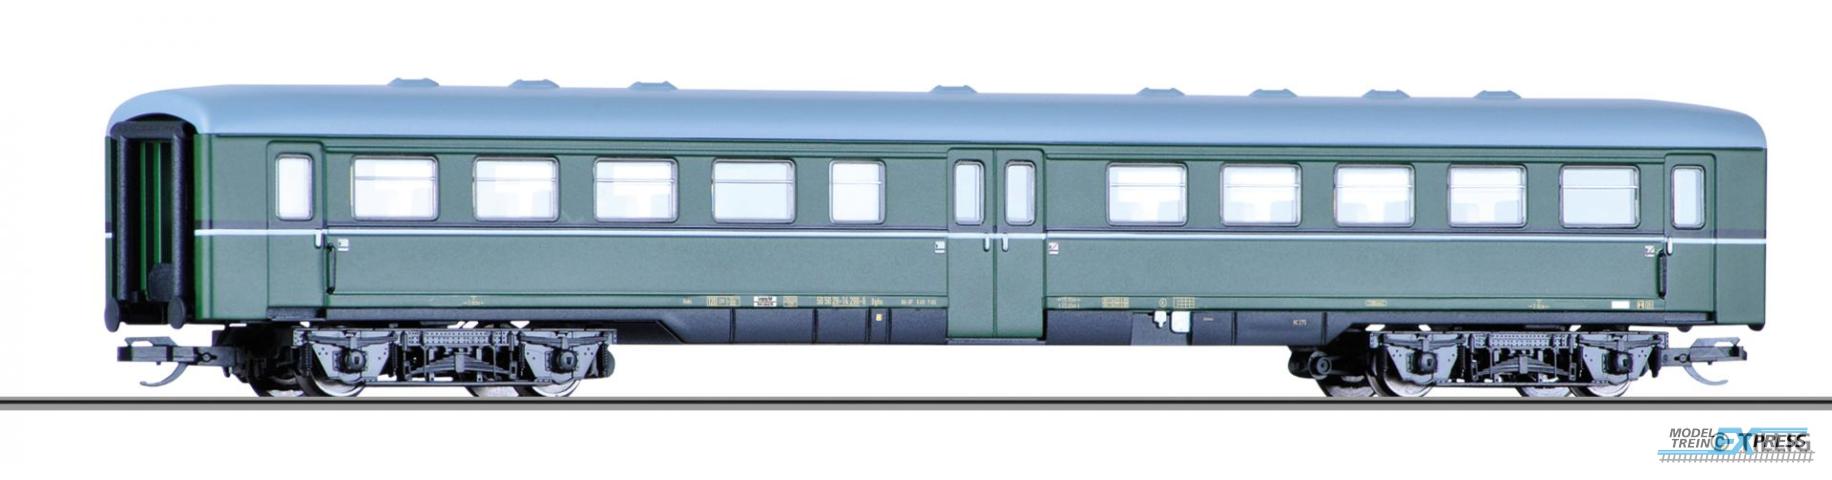 Tillig 13877 Reisezugwagen 2. Klasse Bghu der DR, Ep. IV